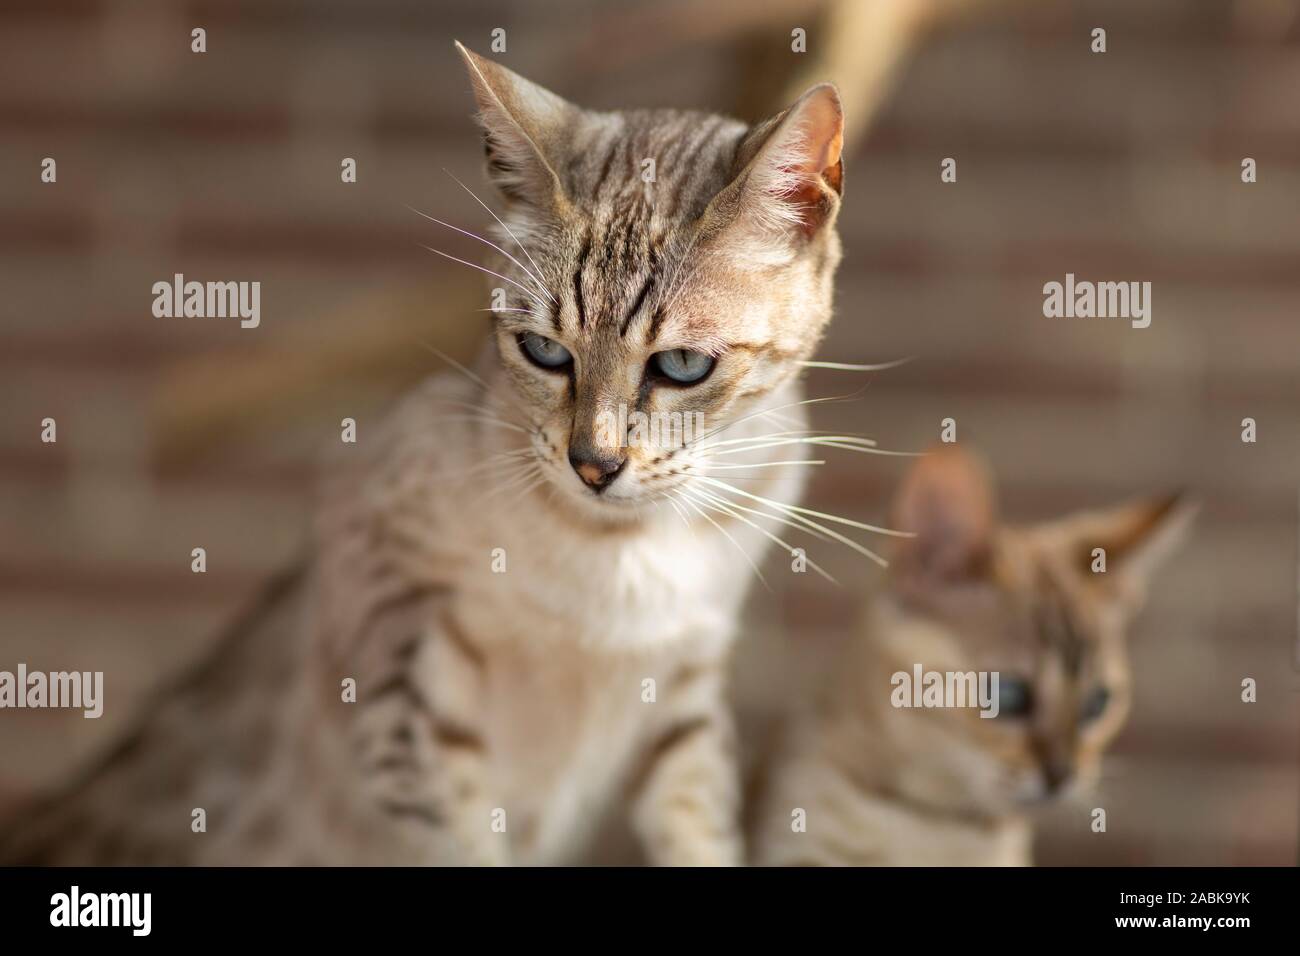 Due piccoli bella Savannah gattino gatti serval ibridi su uno sfondo di colore marrone. Molto blu occhi luminosi Foto Stock